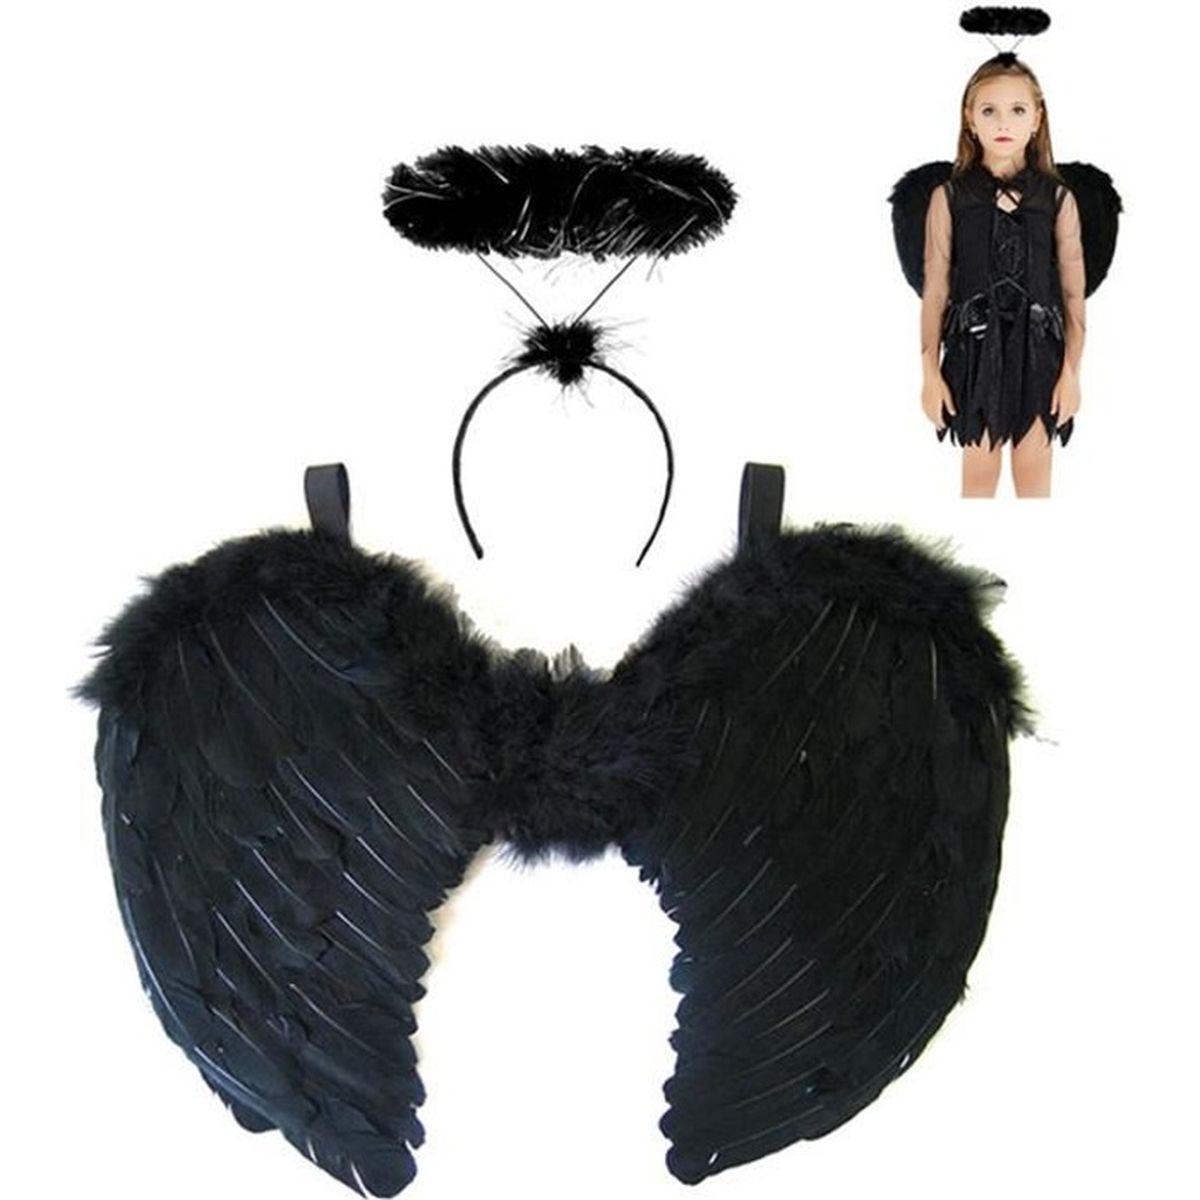 Mardi gras carnaval costume noir ange robe noire 36 Nouveau 